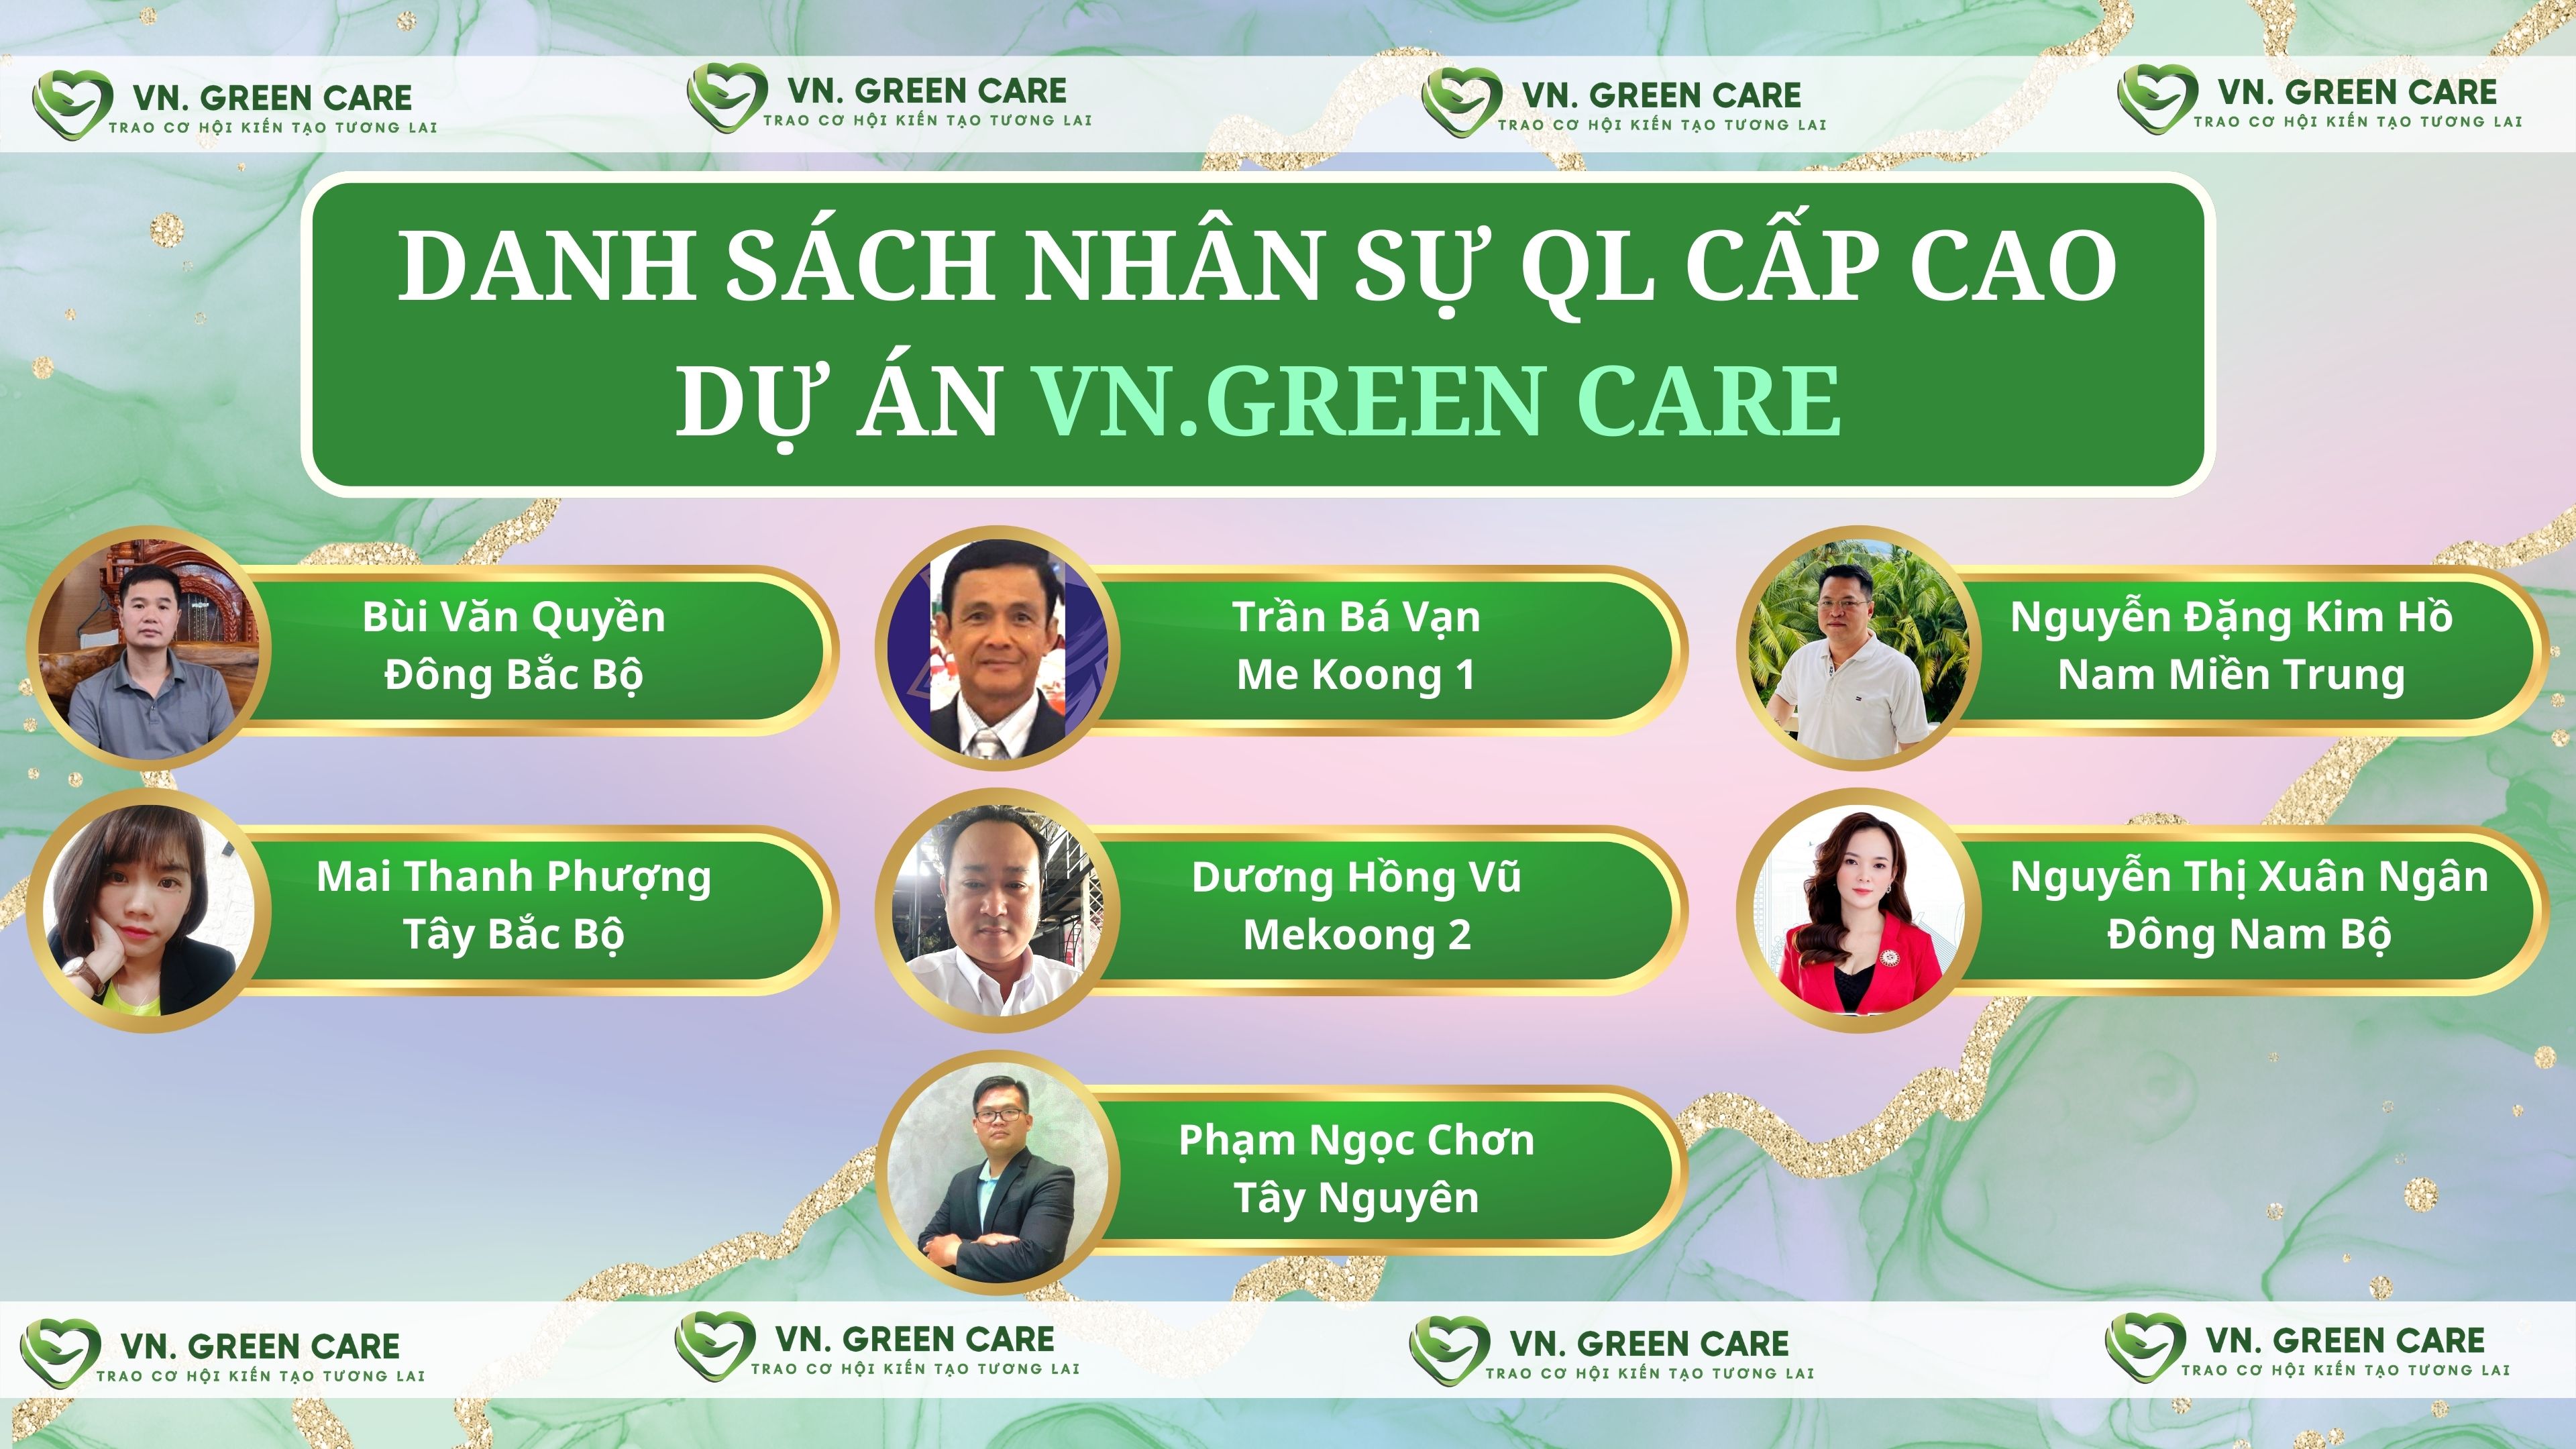 Danh sách nhân sự quản lý cấp cao dự án VN.Green Care